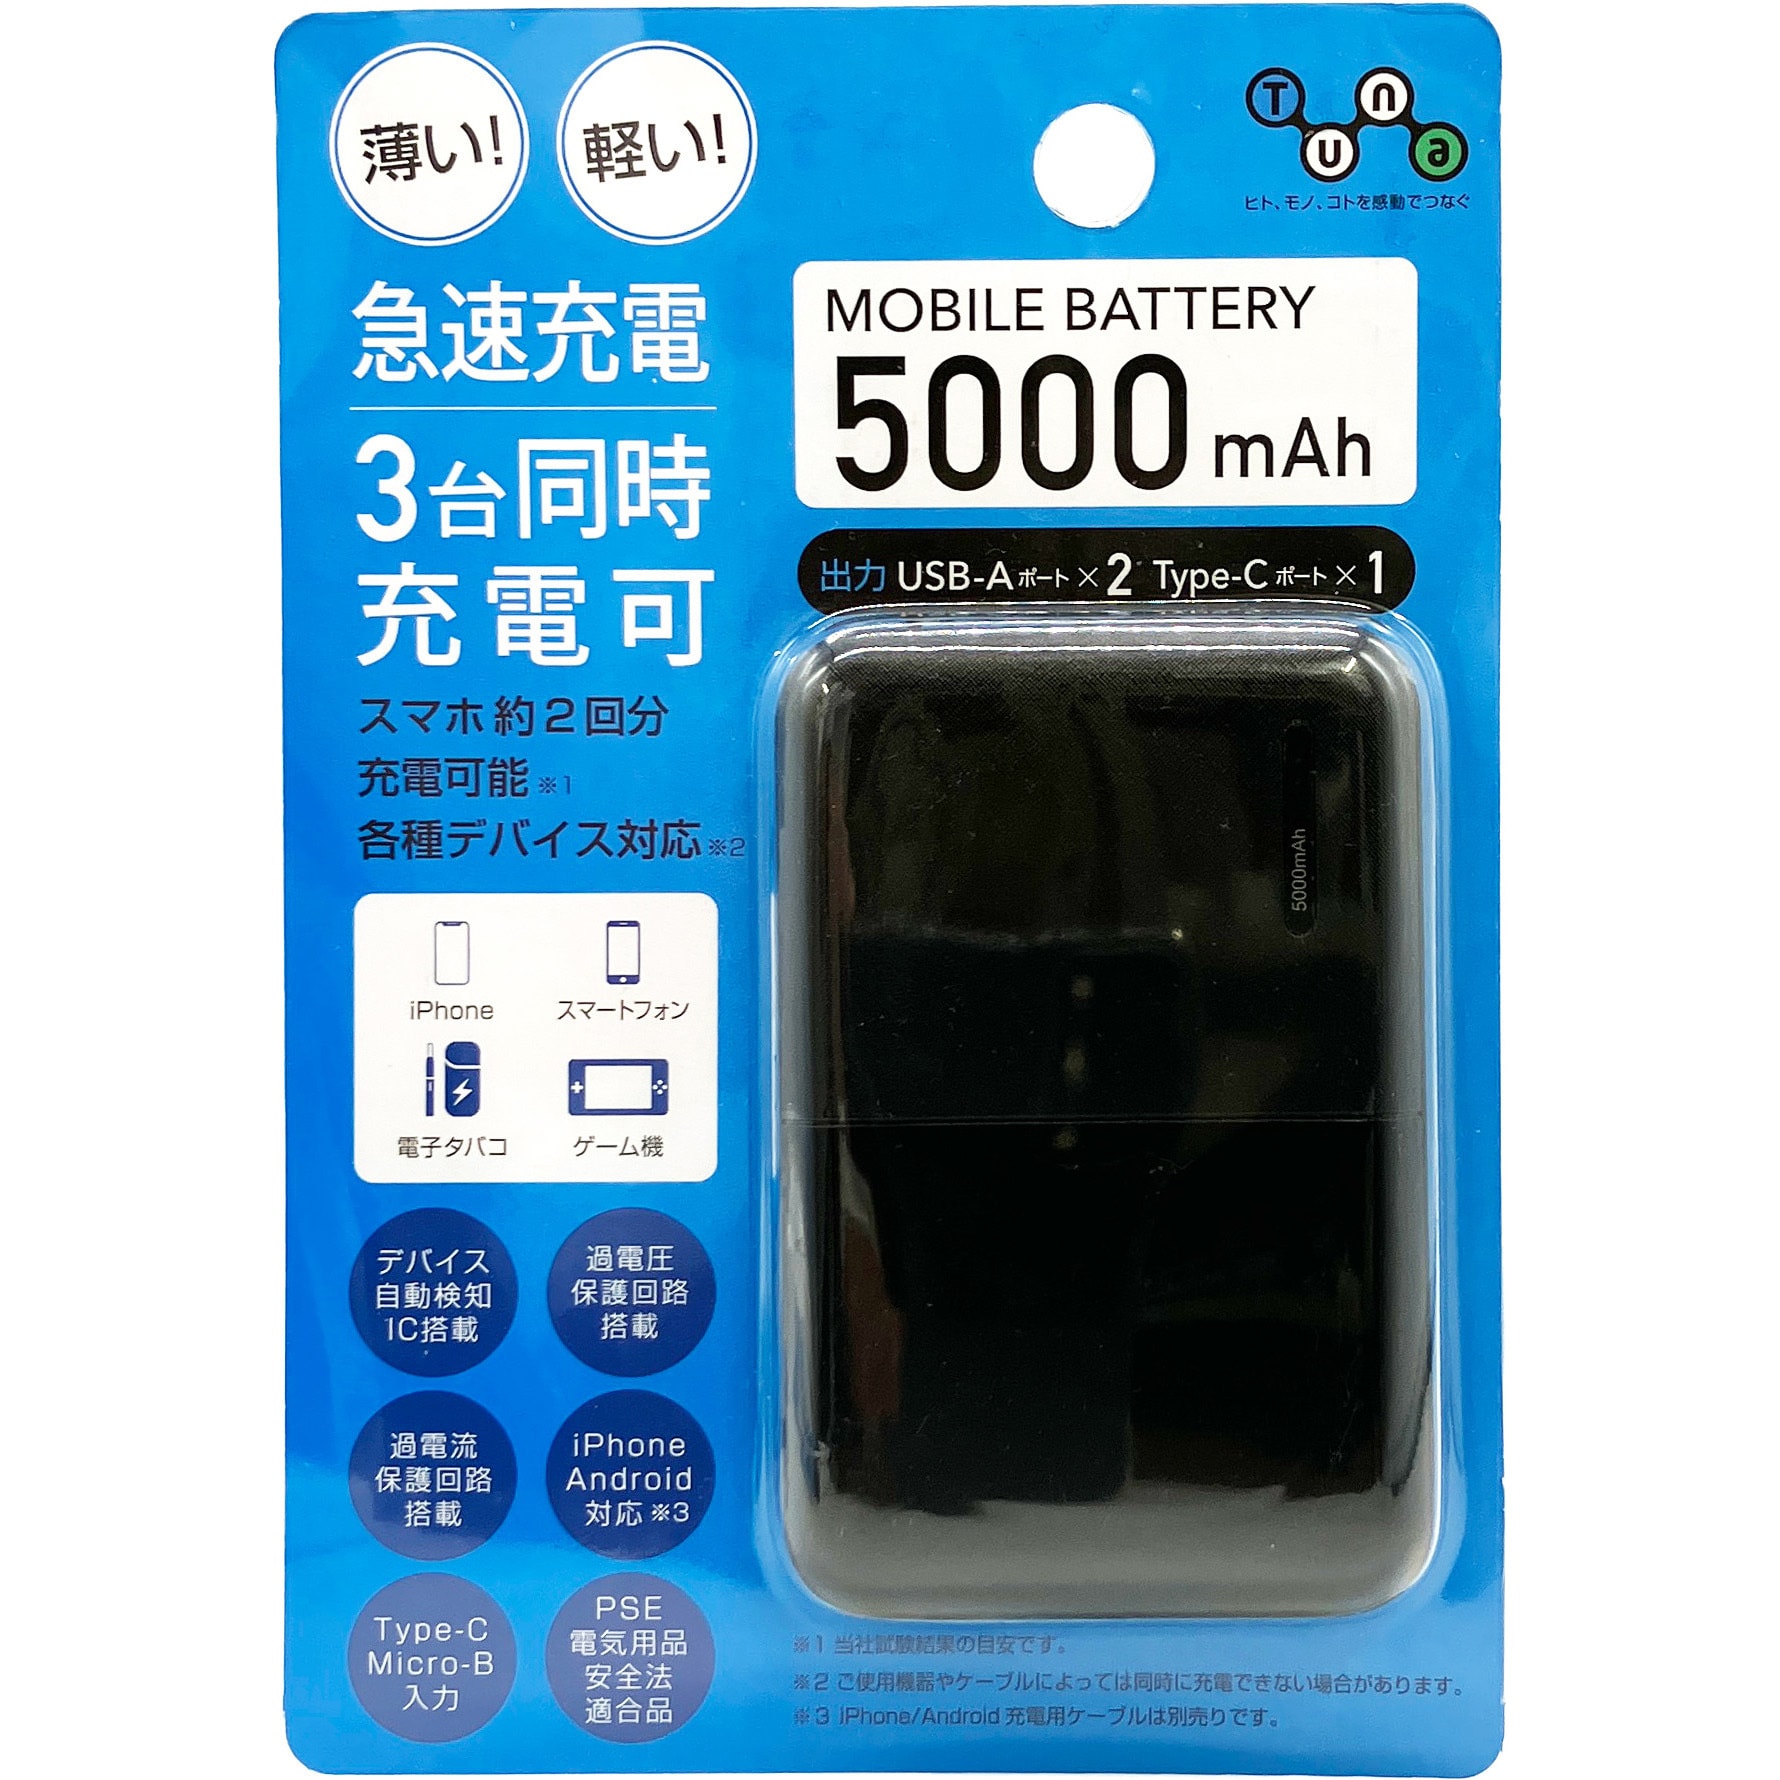 モバイルバッテリー5000 2.4A